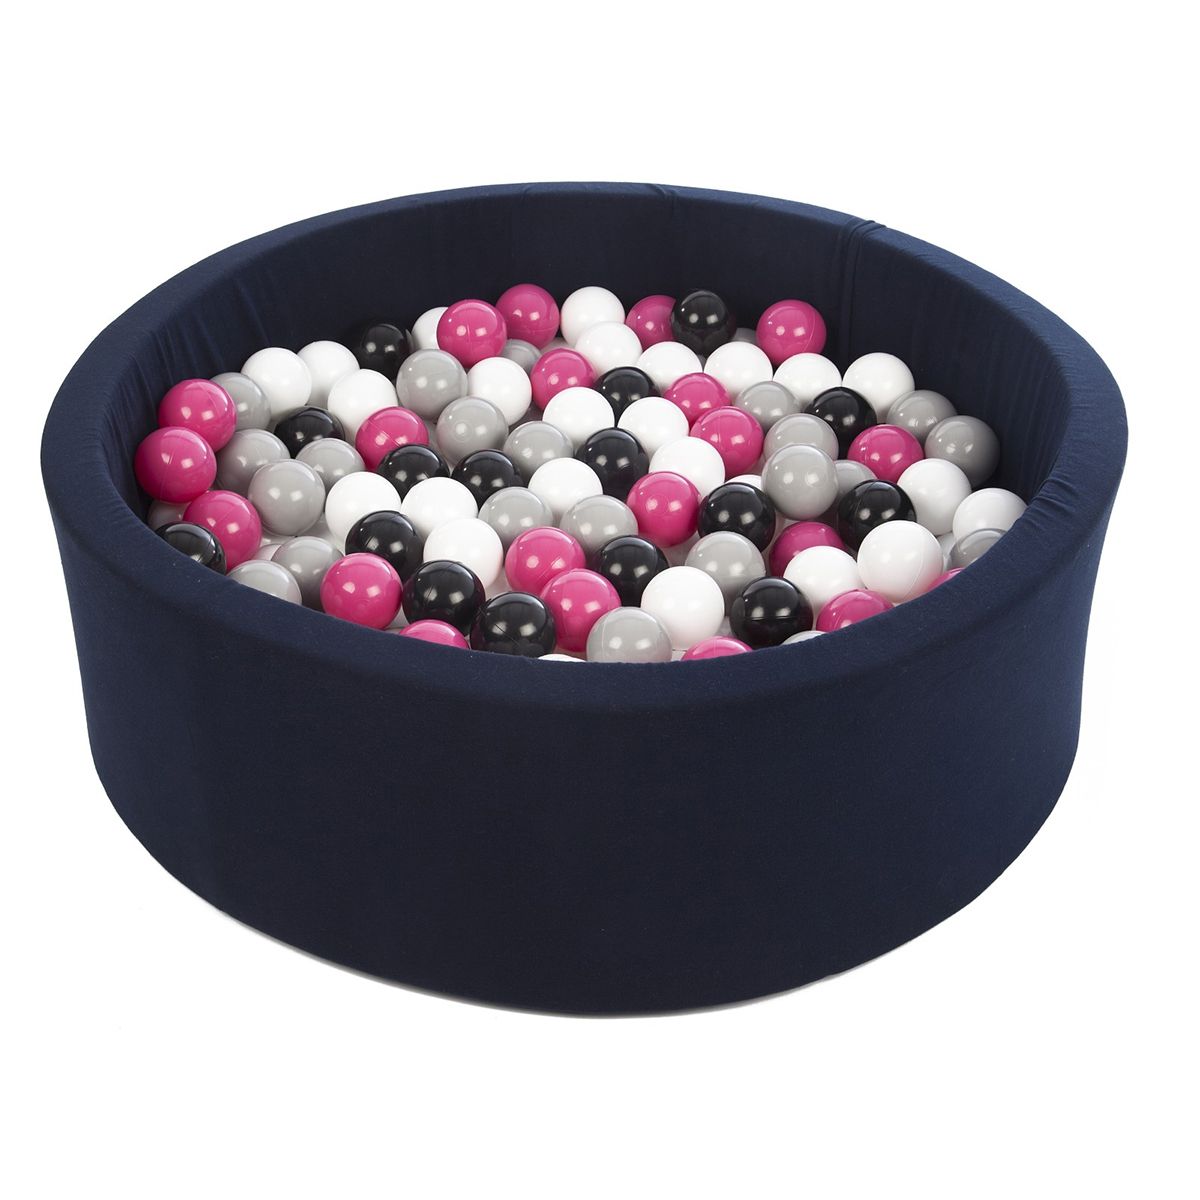  Piscine à balles Aire de jeu + 300 balles bleu marine noir, blanc, rose,gris